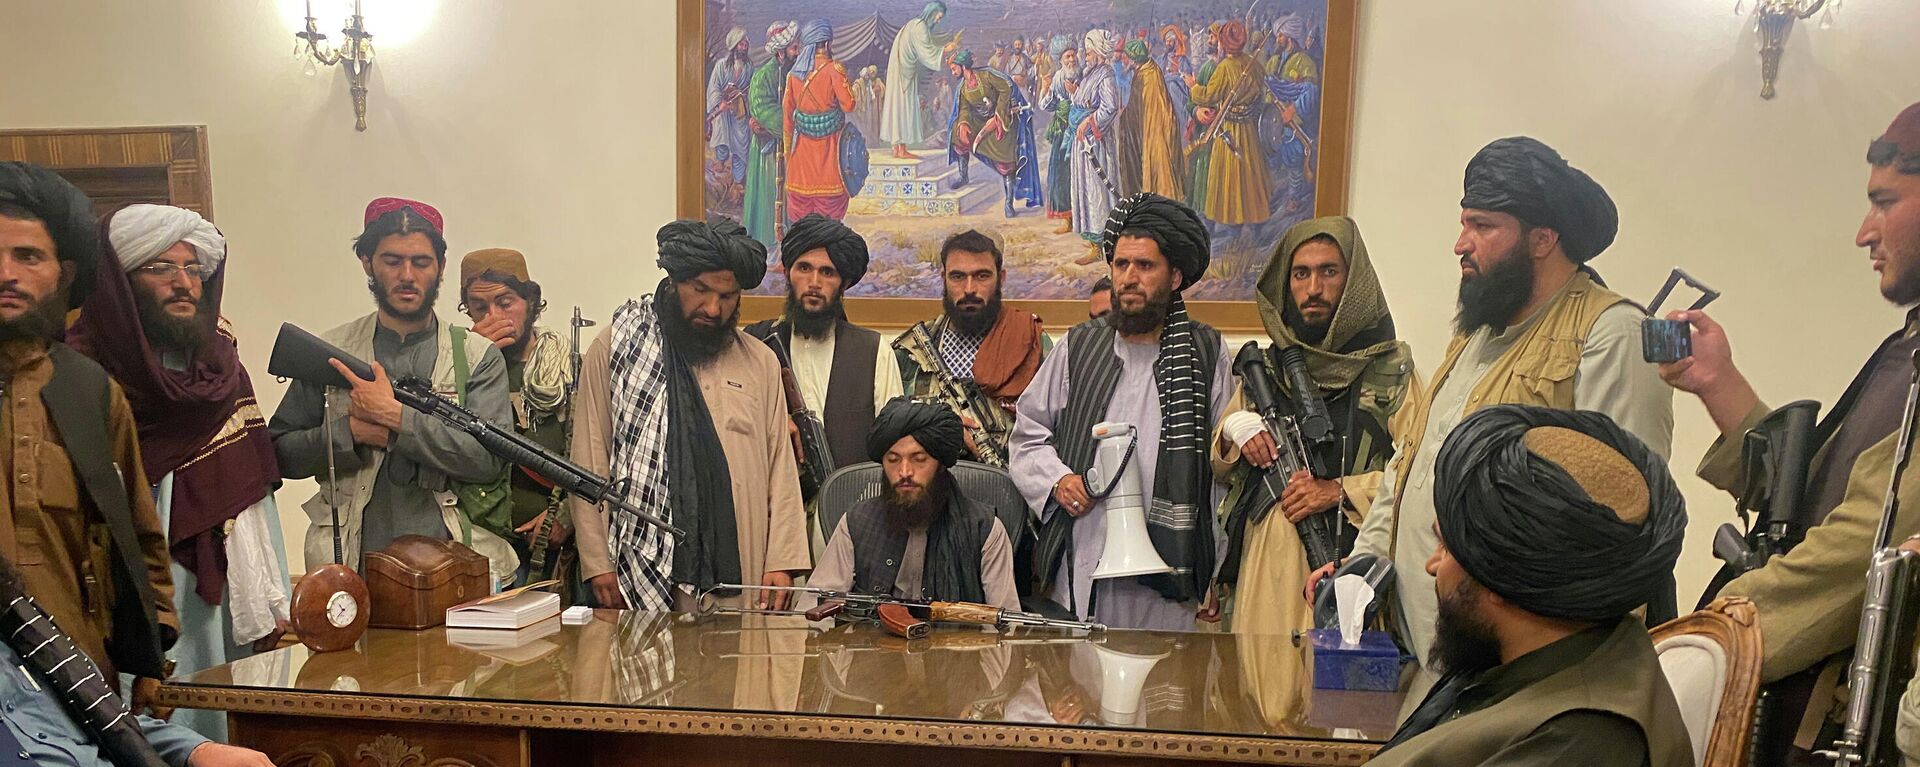 Талибани након уласка у председничку палату у Кабулу - Sputnik Србија, 1920, 31.08.2021